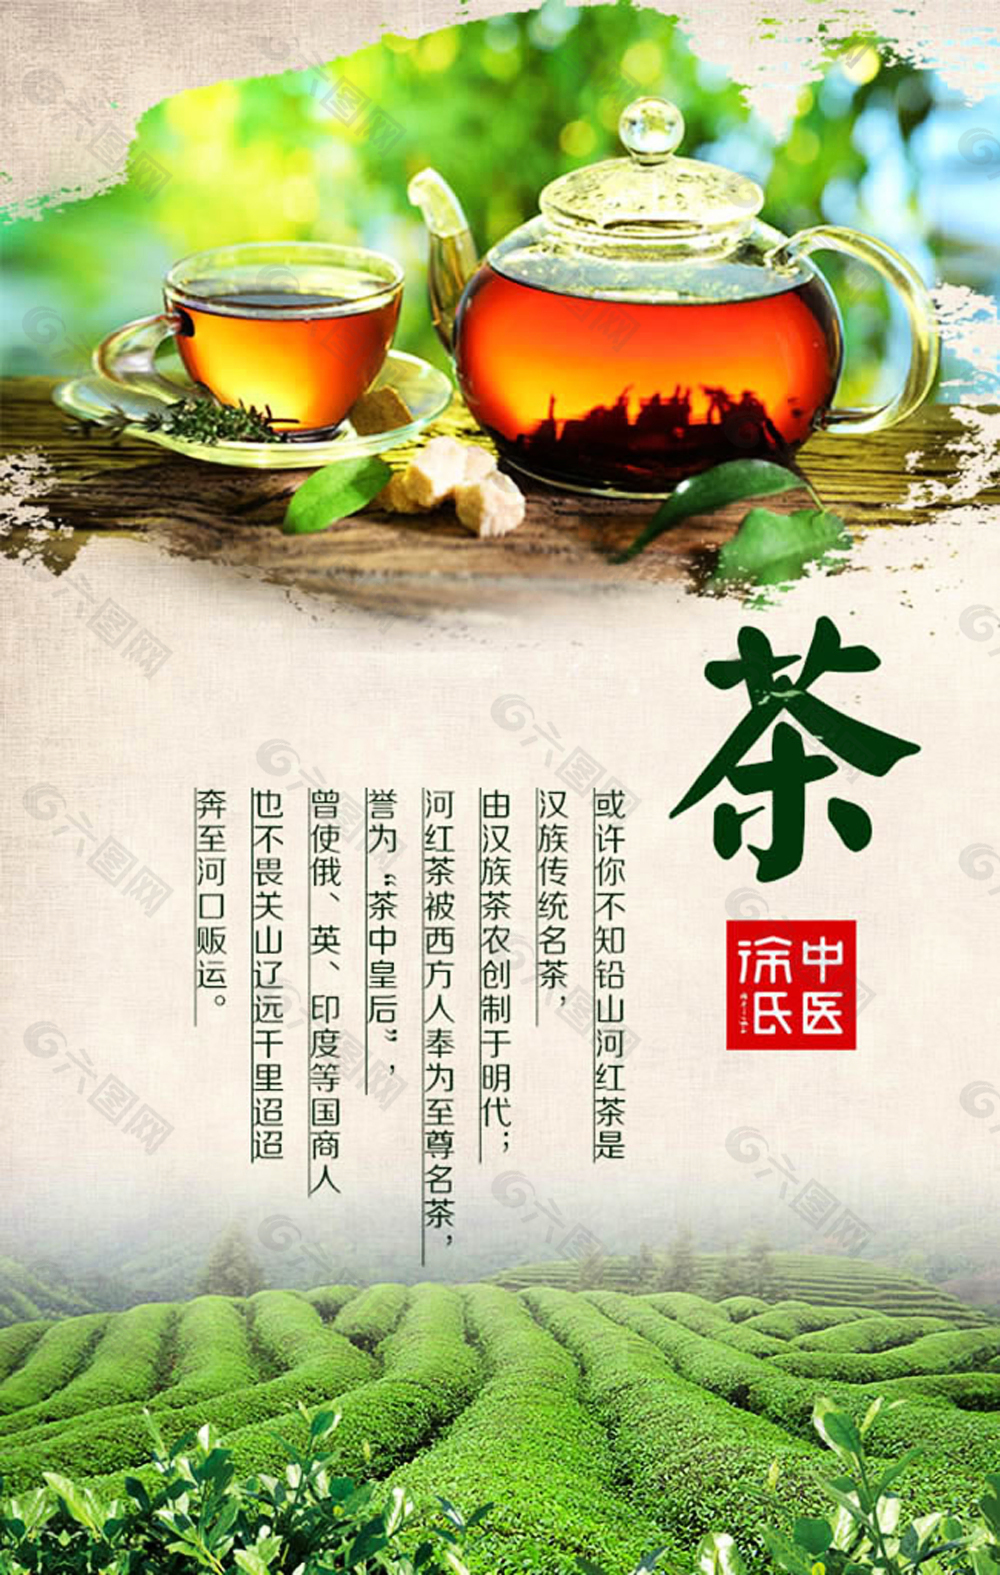 中国风茶文化宣传海报设计psd素材